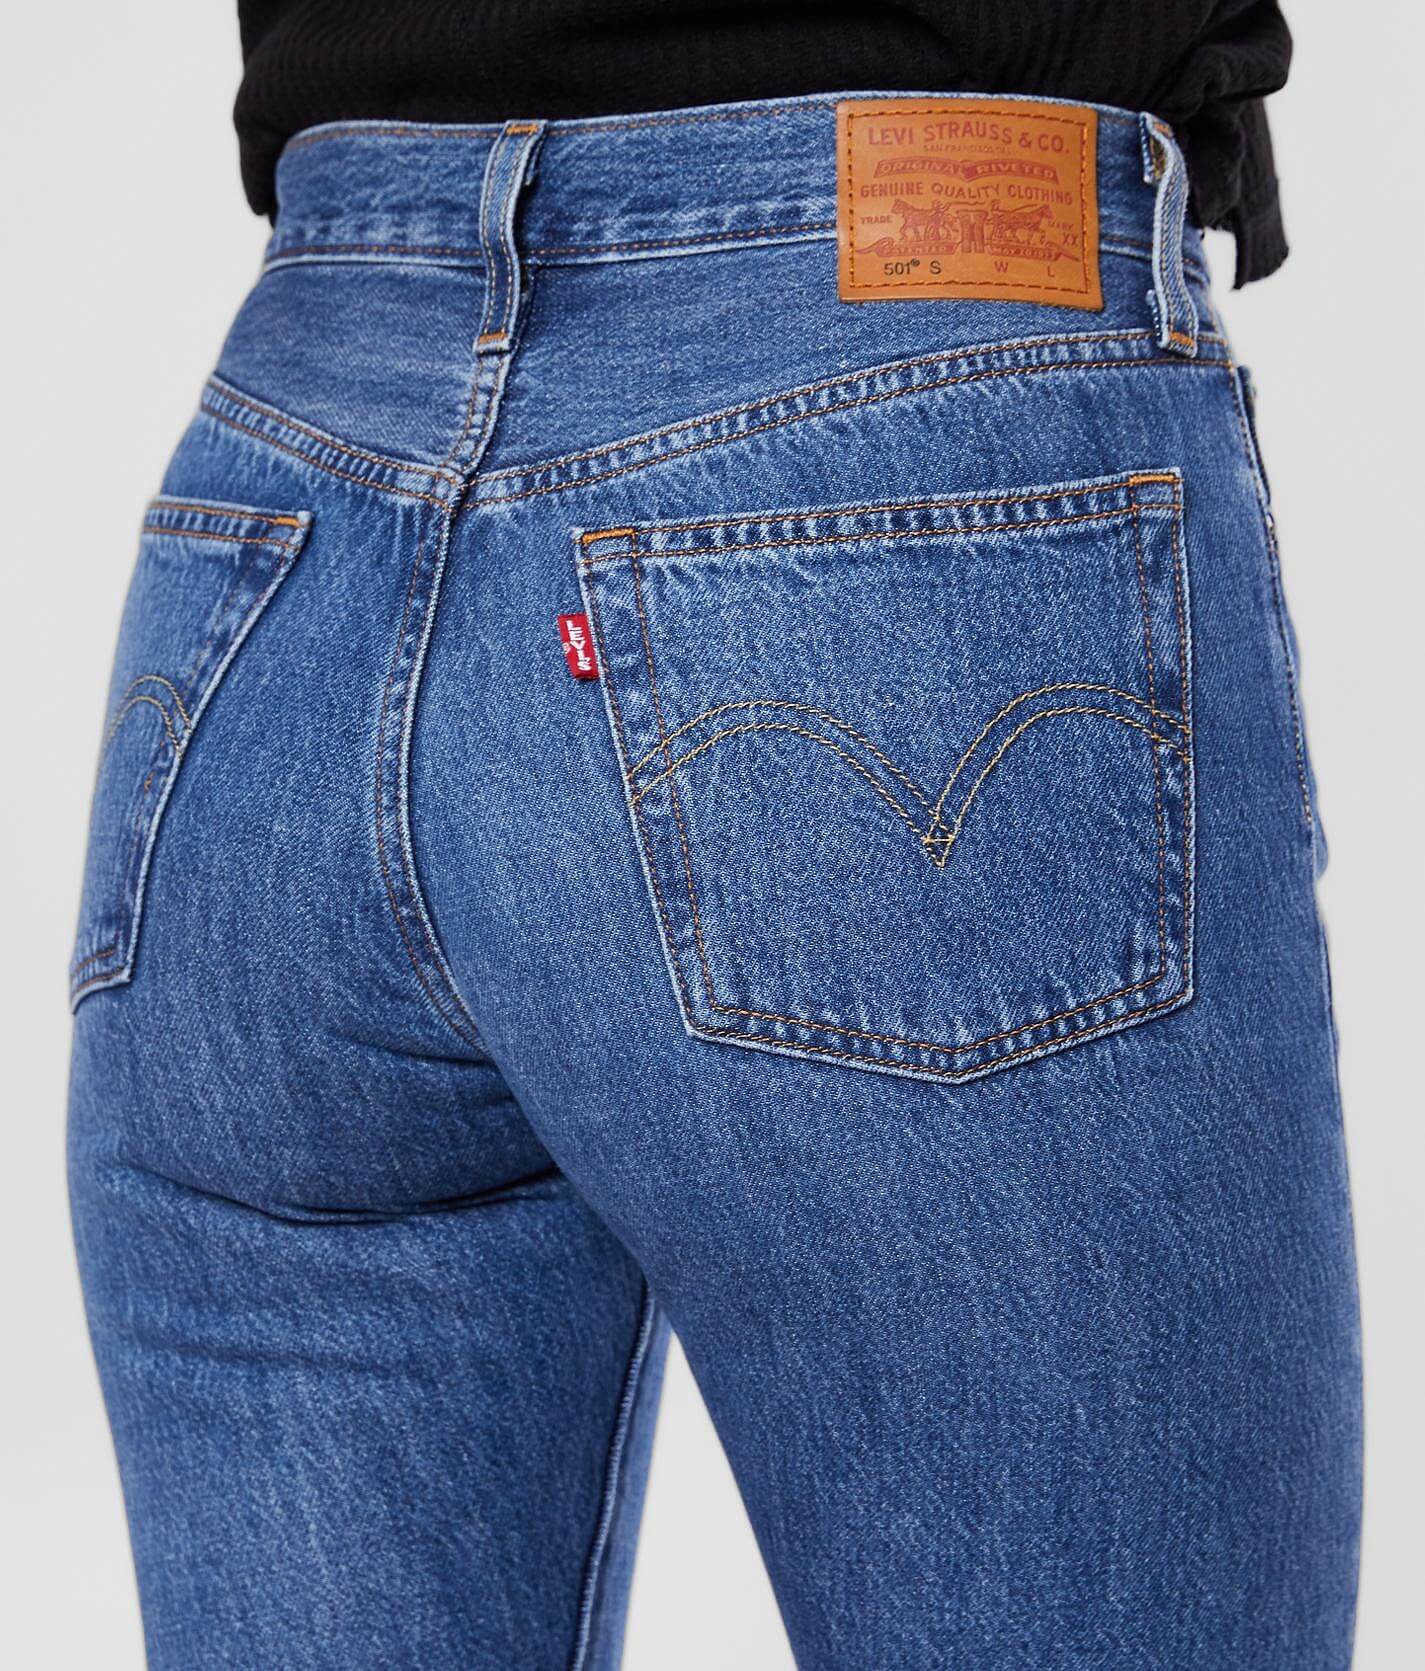 501 customized skinny jeans